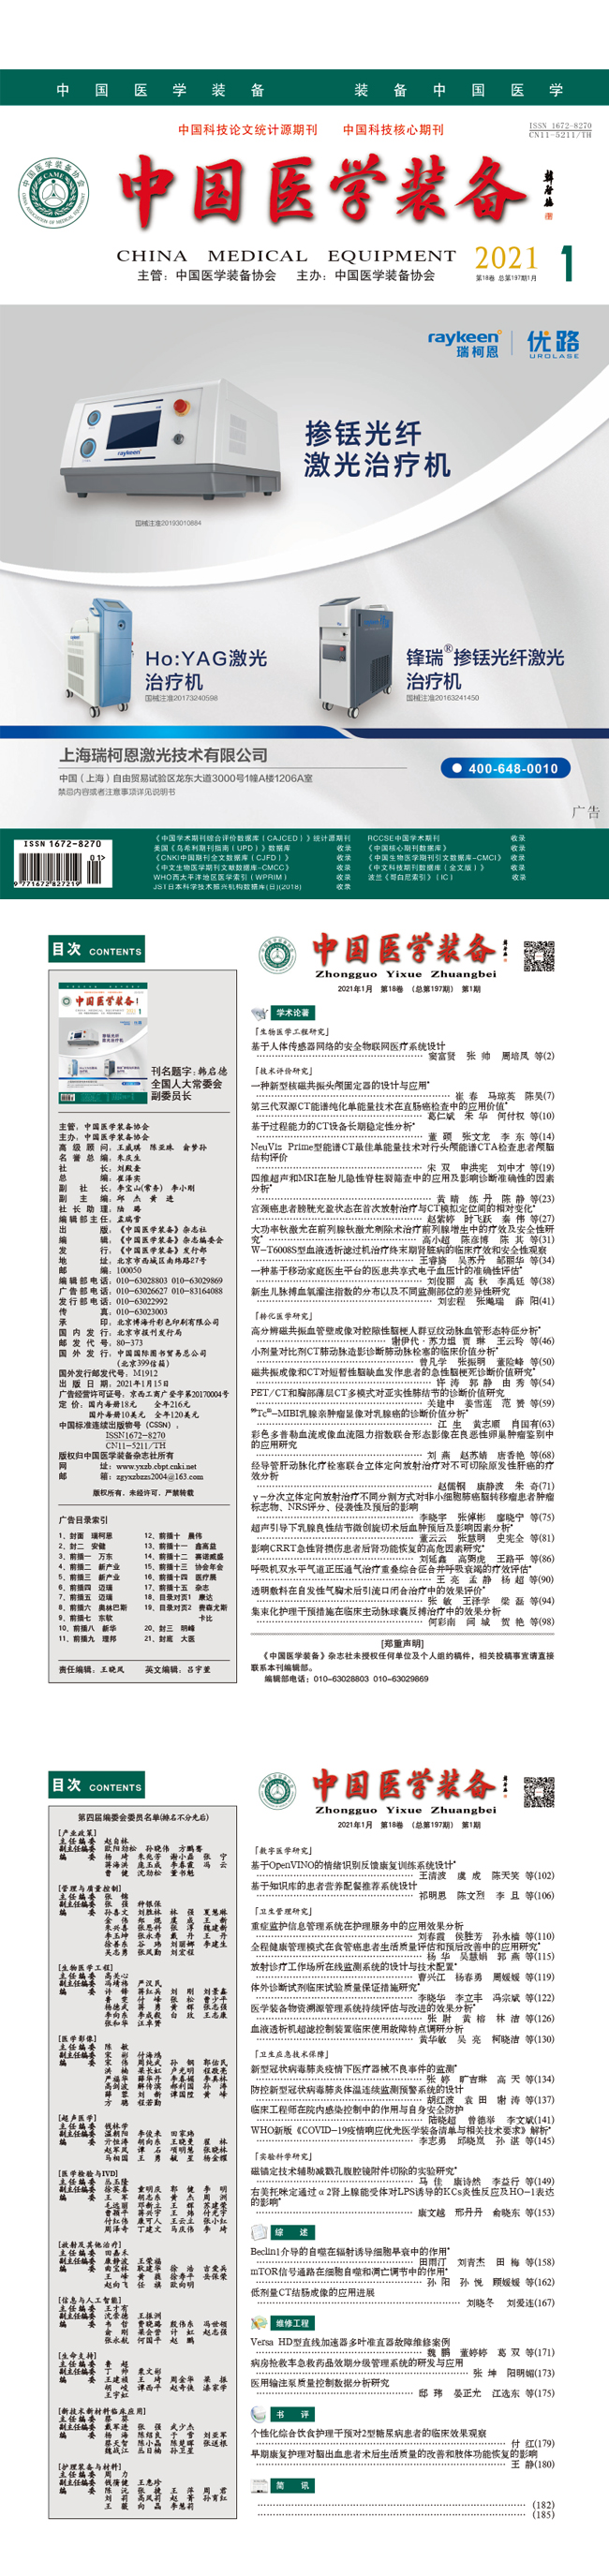 《中国医学装备》2021年1期出版(图1)